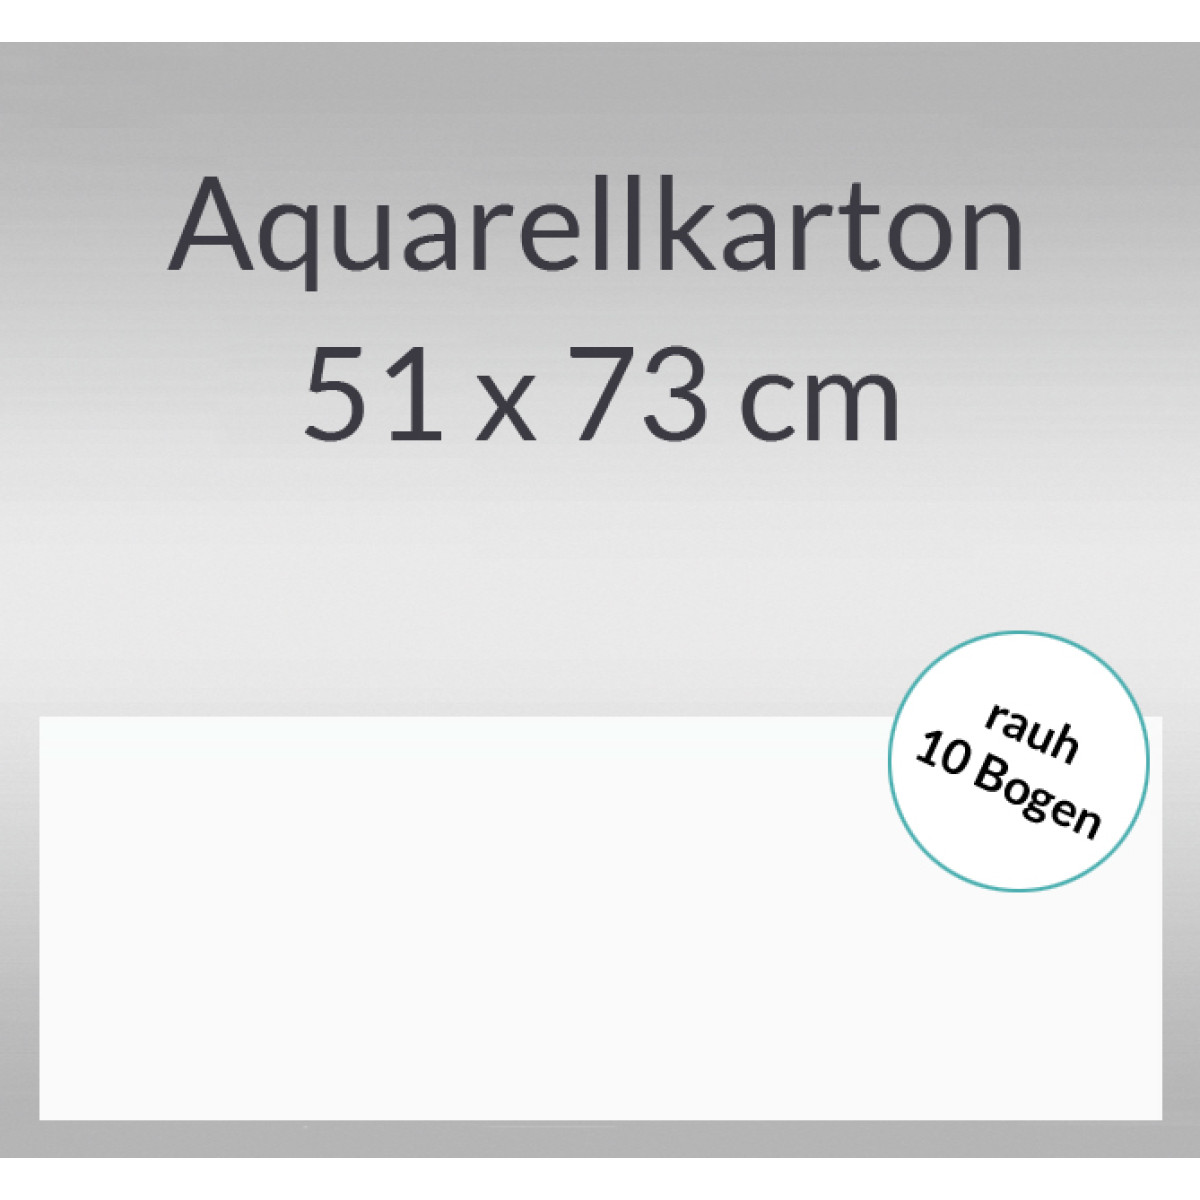 Aquarellkarton rauh 200 g/qm 51 x 73 cm